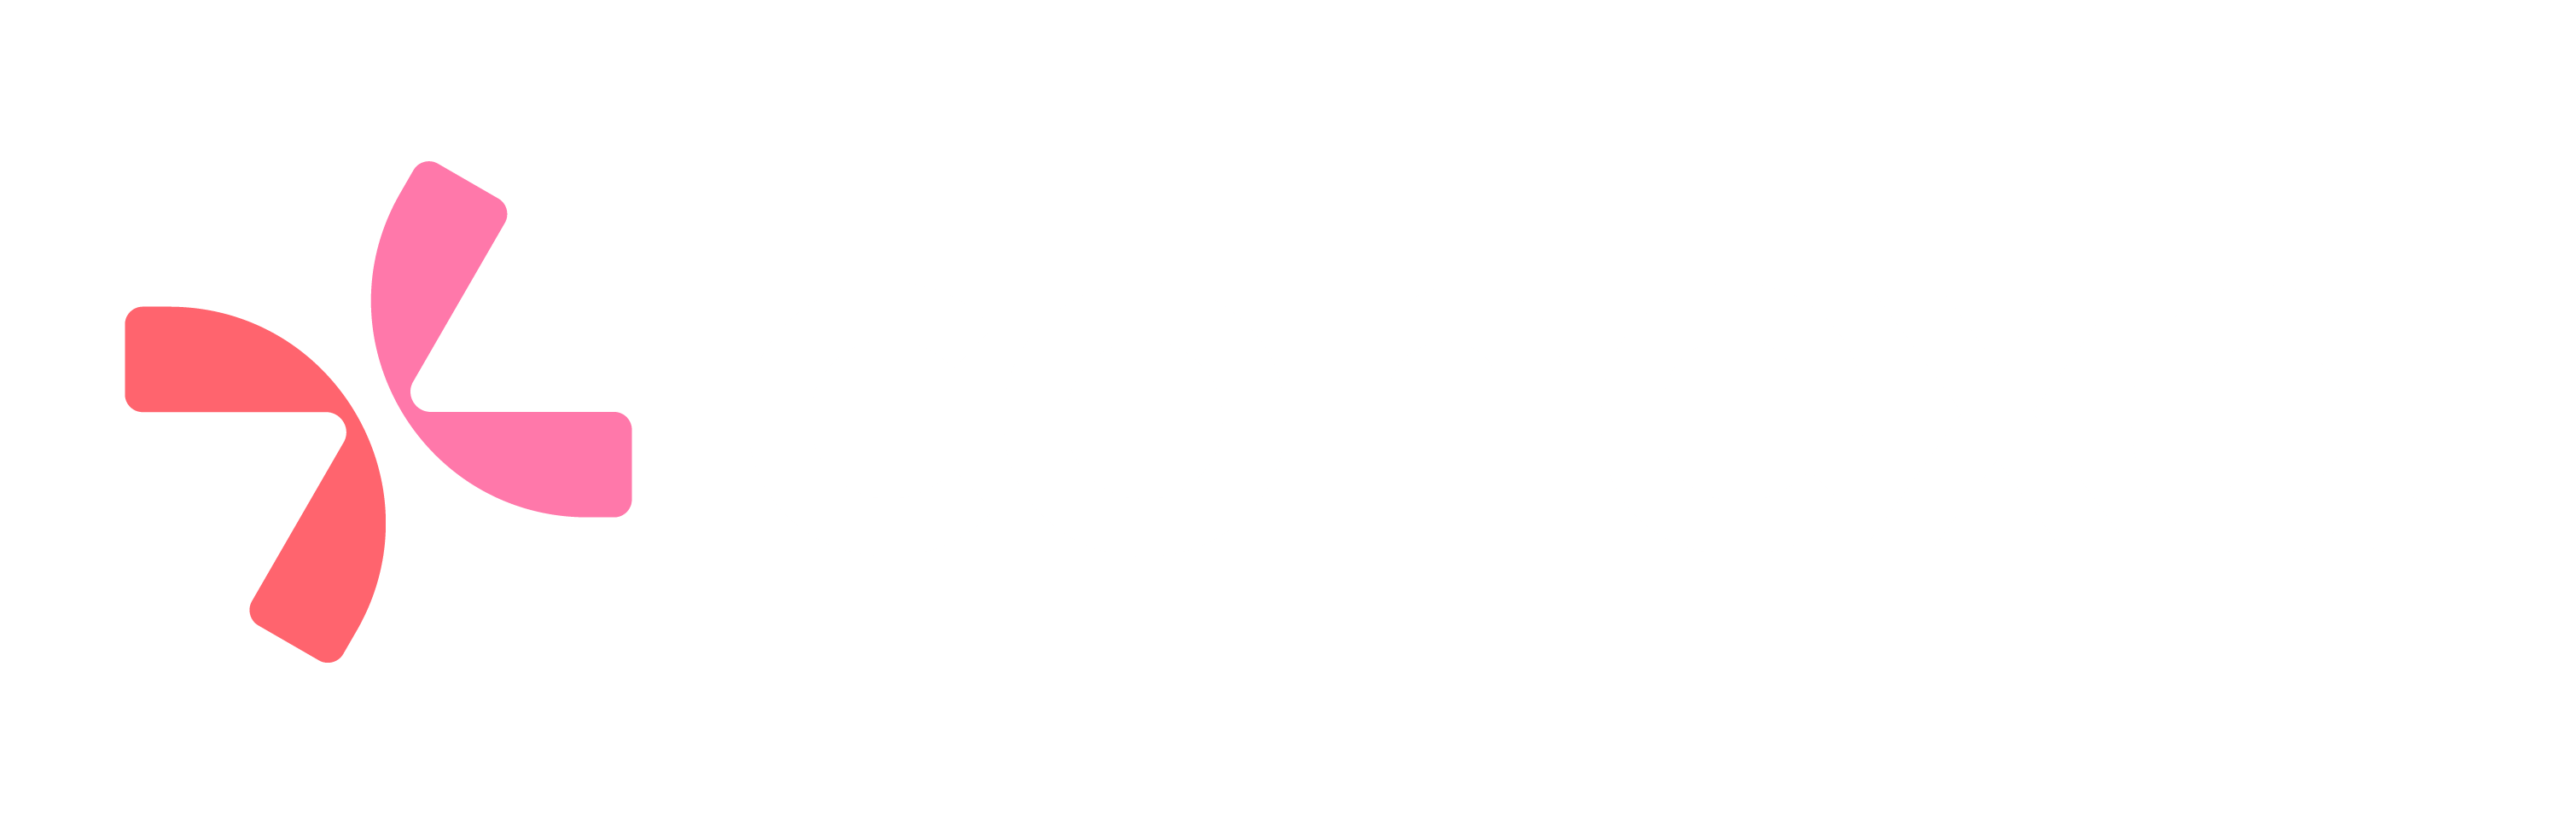 Logo-Conexa-Cor-e-Branca.png